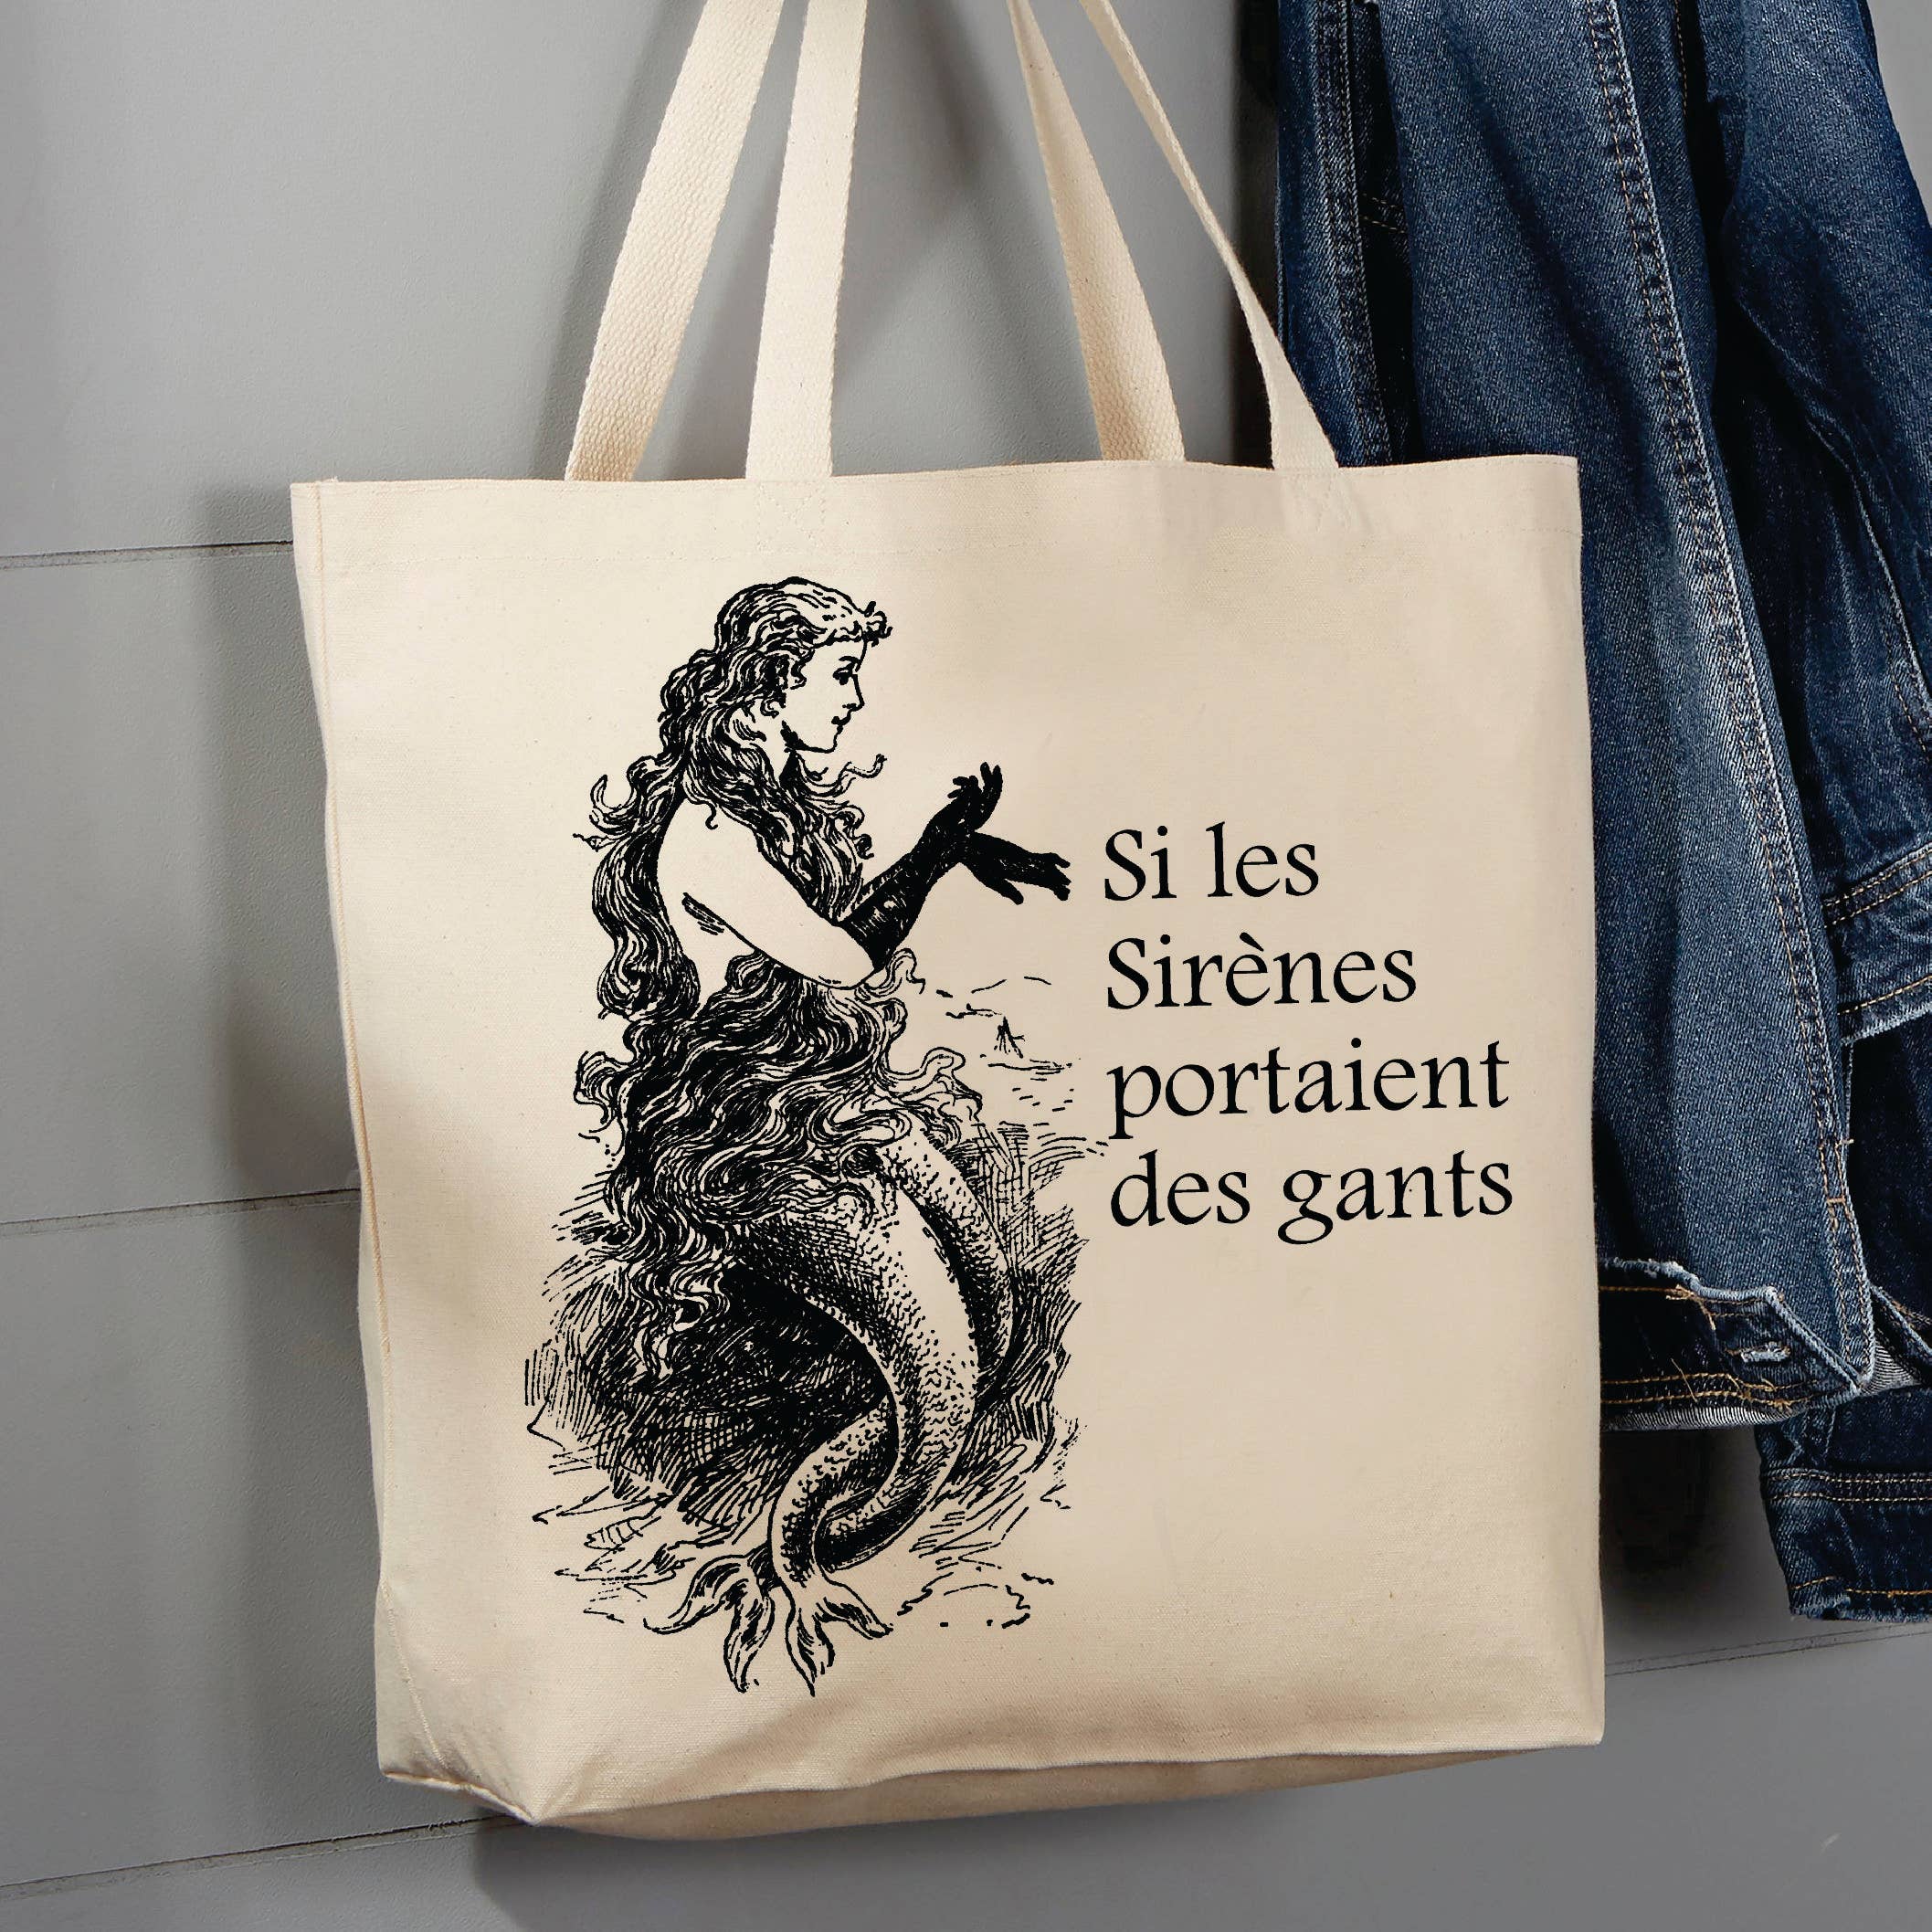 Vintage French, Mermaid, Si Les Sirenes, 12 oz  Tote Bag